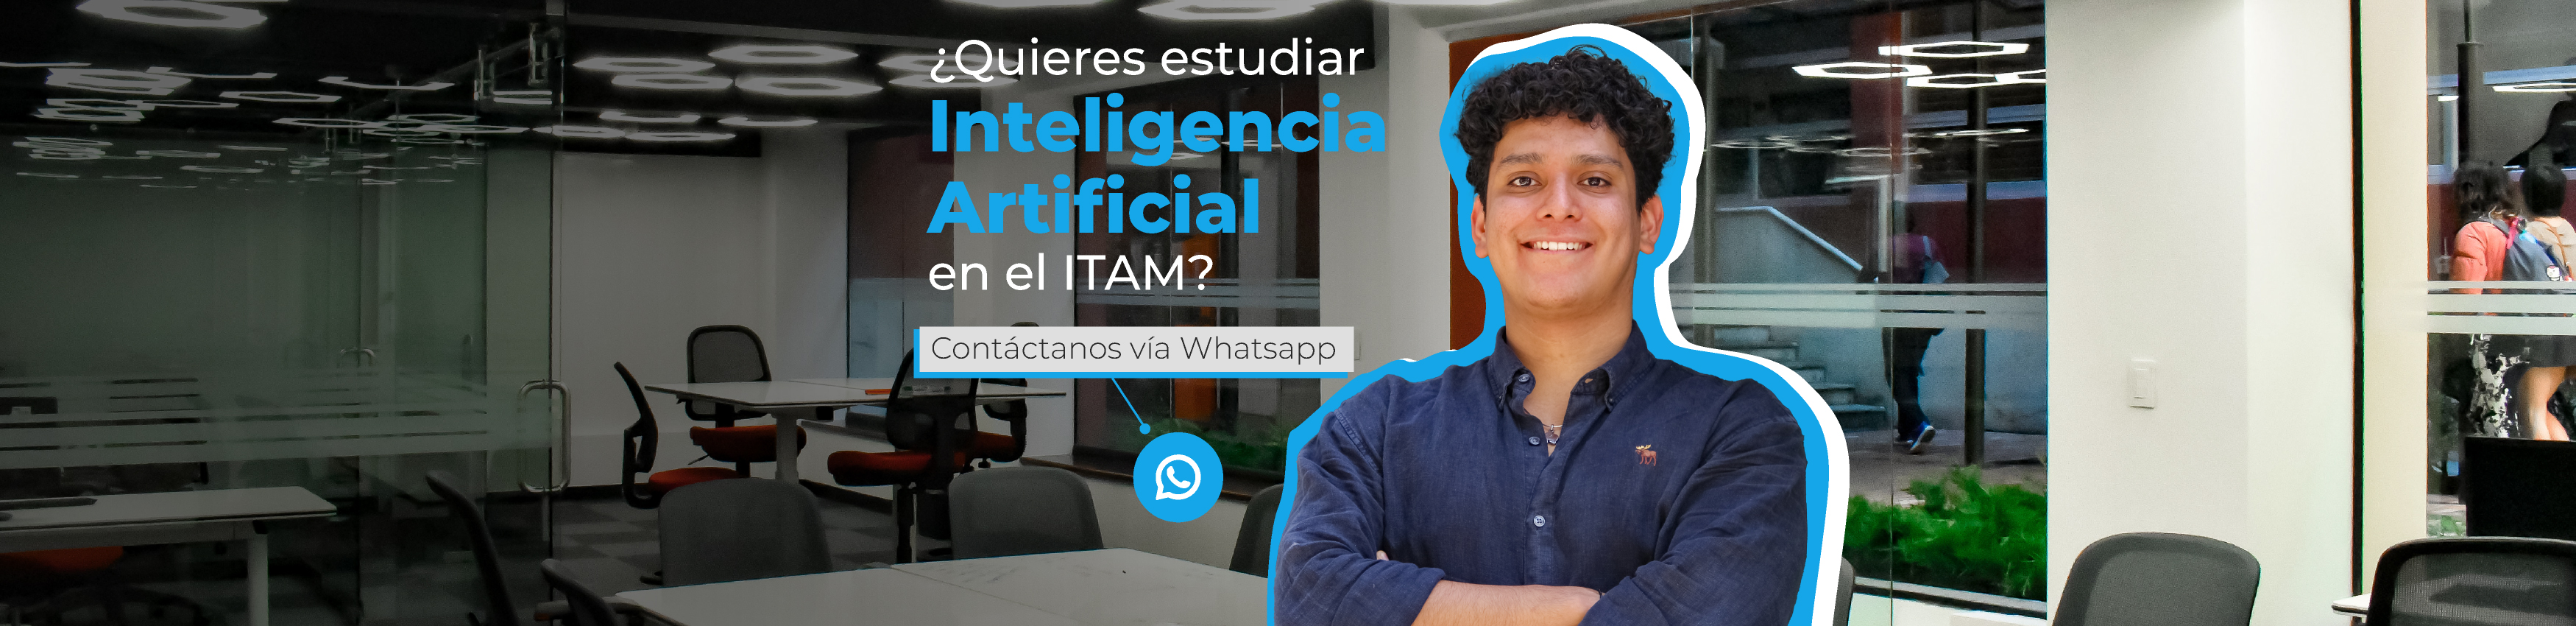 ¿Quieres estudiar Inteligencia Artificial en el ITAM?